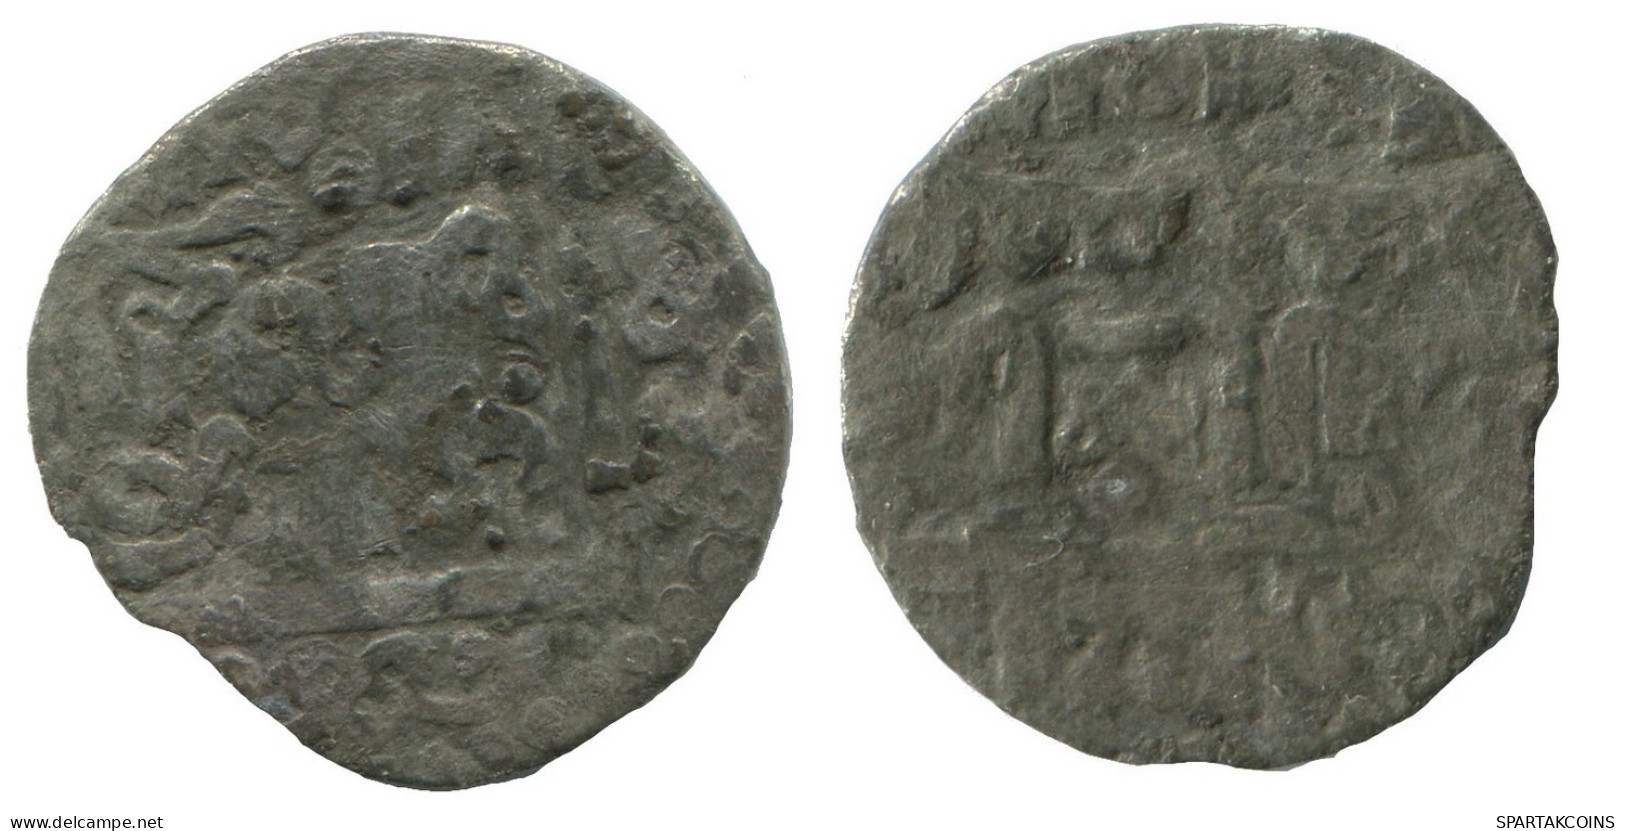 GOLDEN HORDE Silver Dirham Medieval Islamic Coin 1.2g/16mm #NNN2008.8.F.A - Islamiche